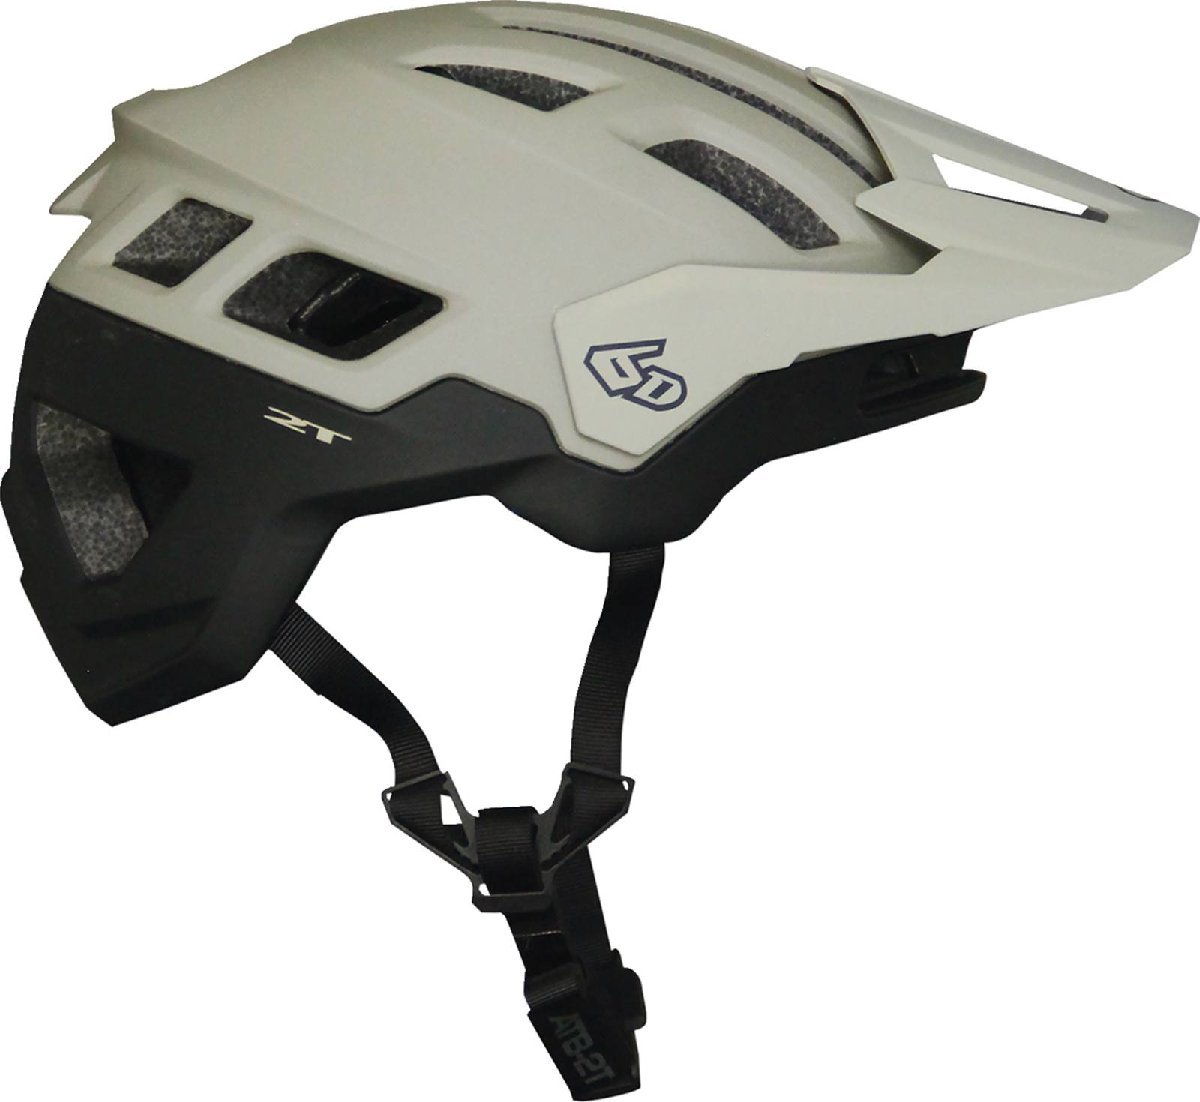 XS/Sサイズ - サンド/ブラックマット - 6D ヘルメッツ ATB-2T Ascent 自転車用 ヘルメット